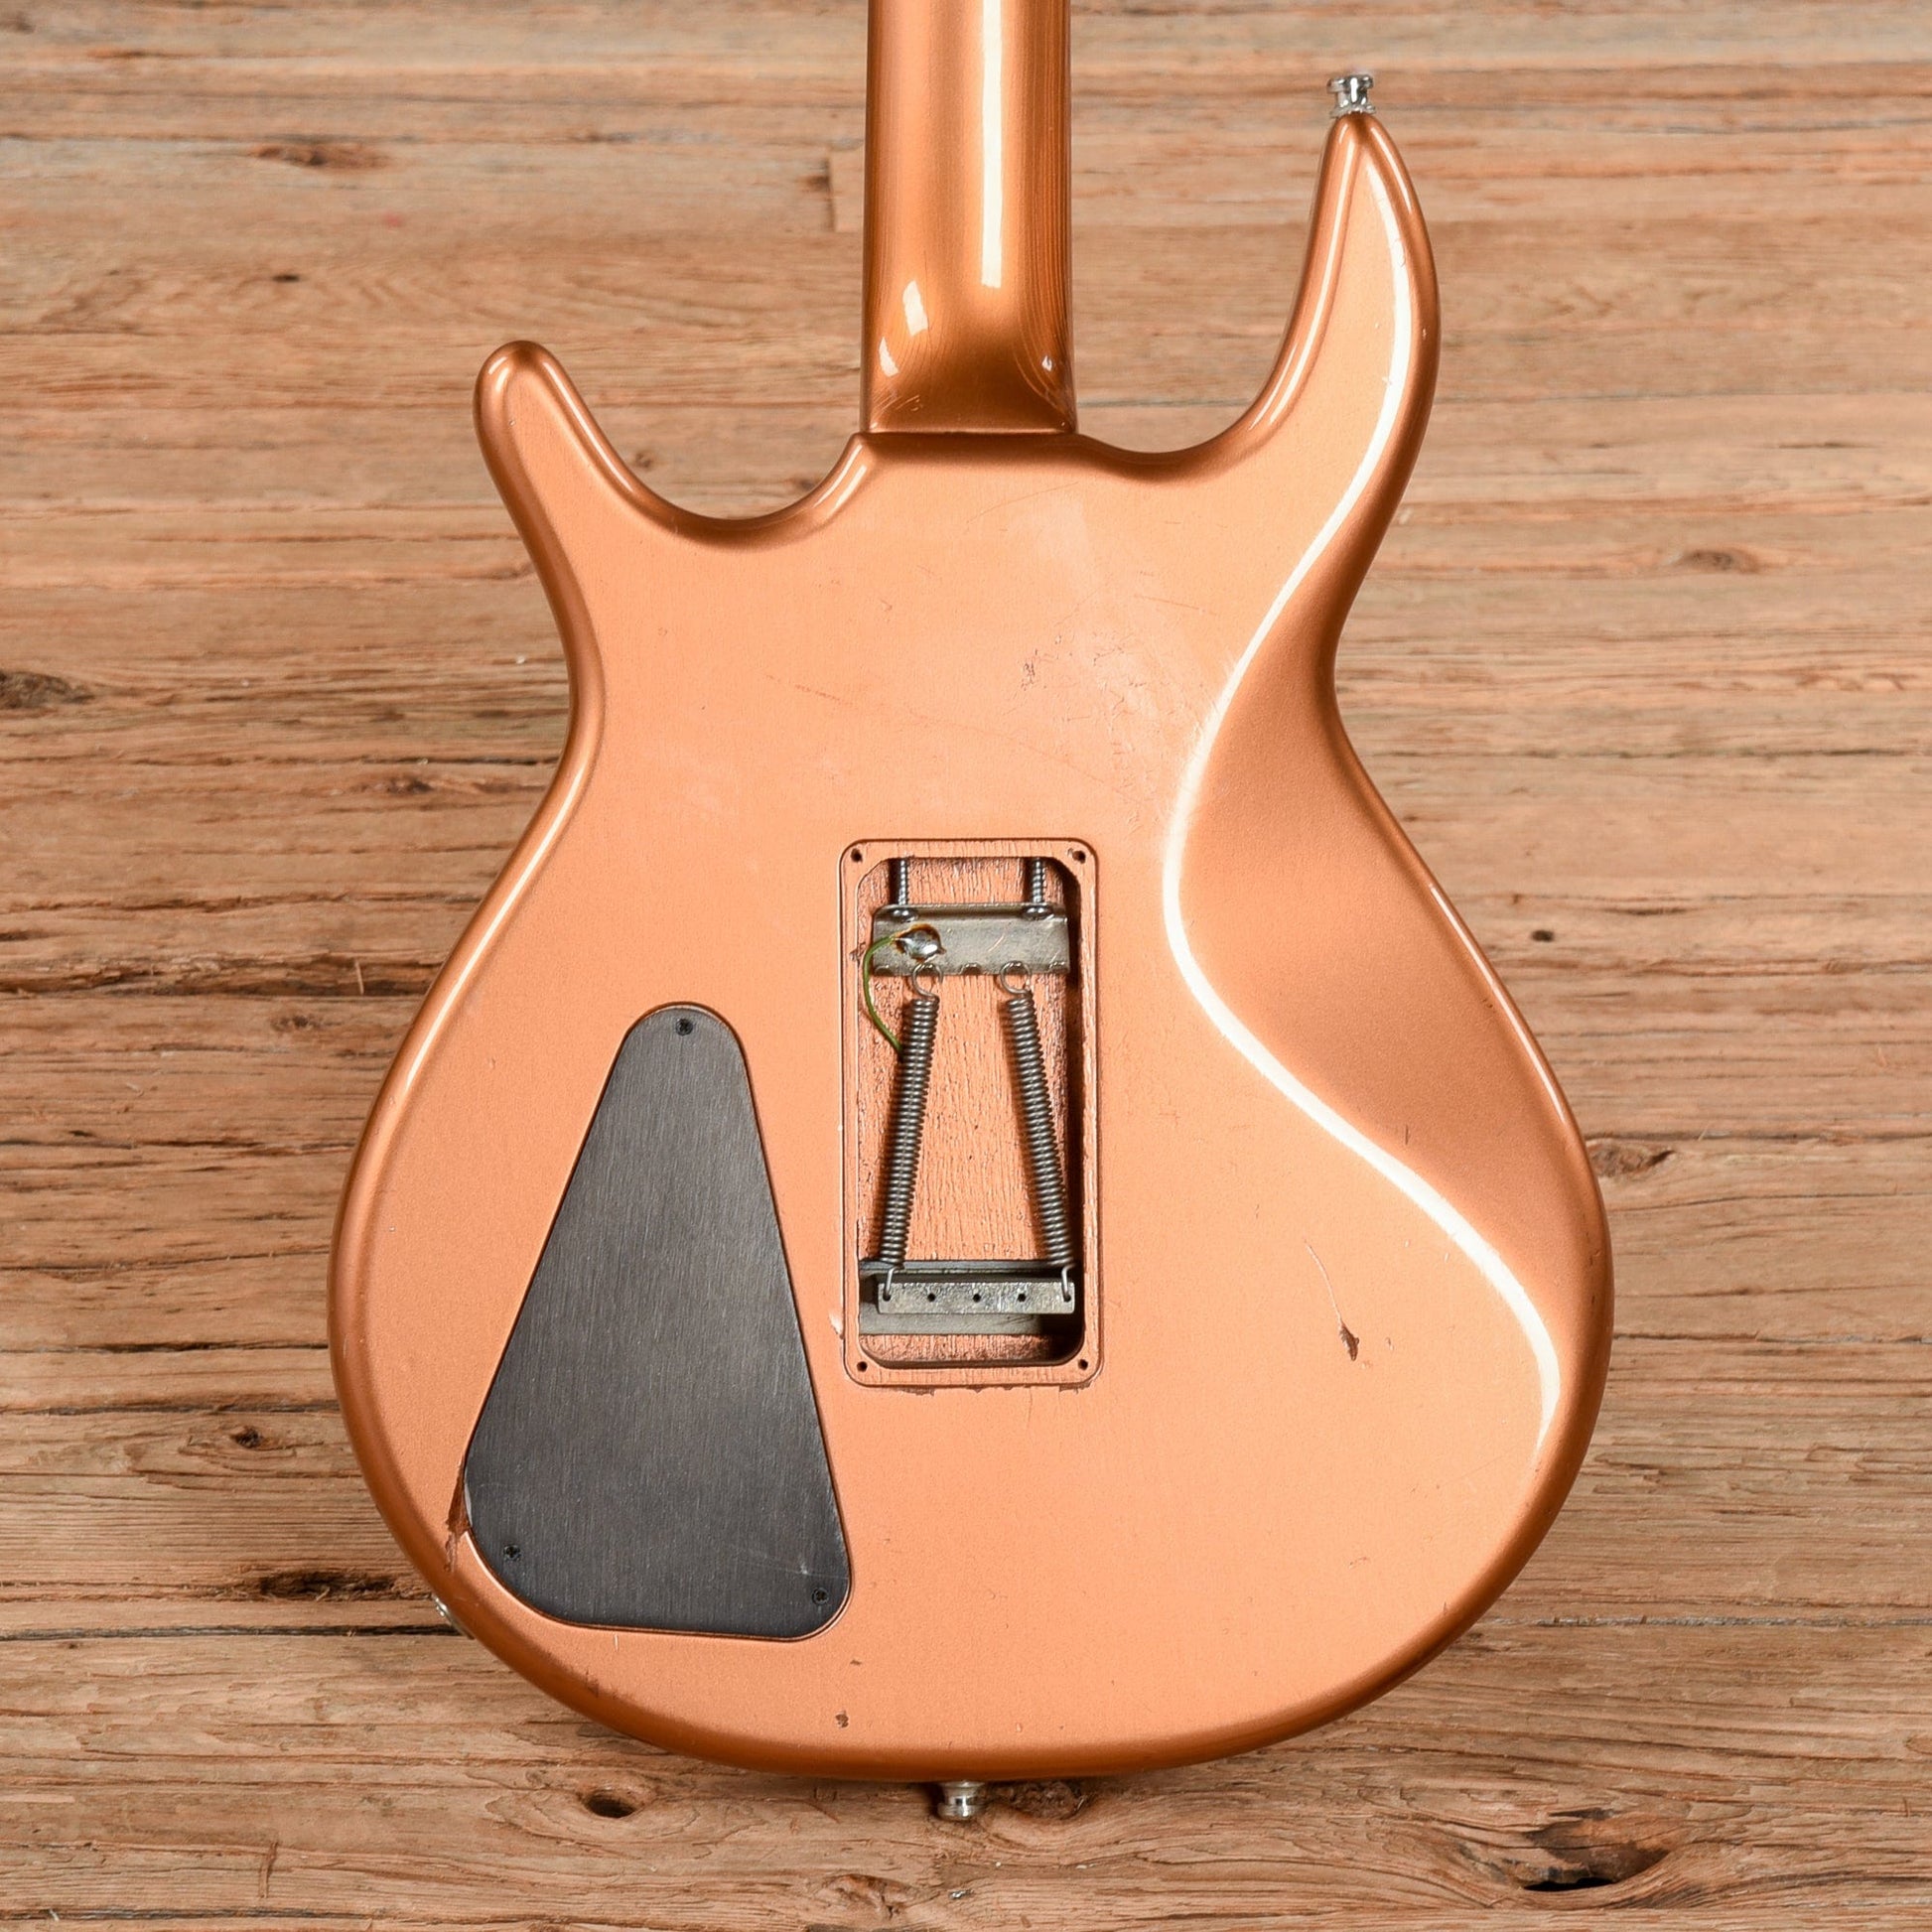 Hamer Steve Stevens Bronze 1984 Electric Guitars / Solid Body